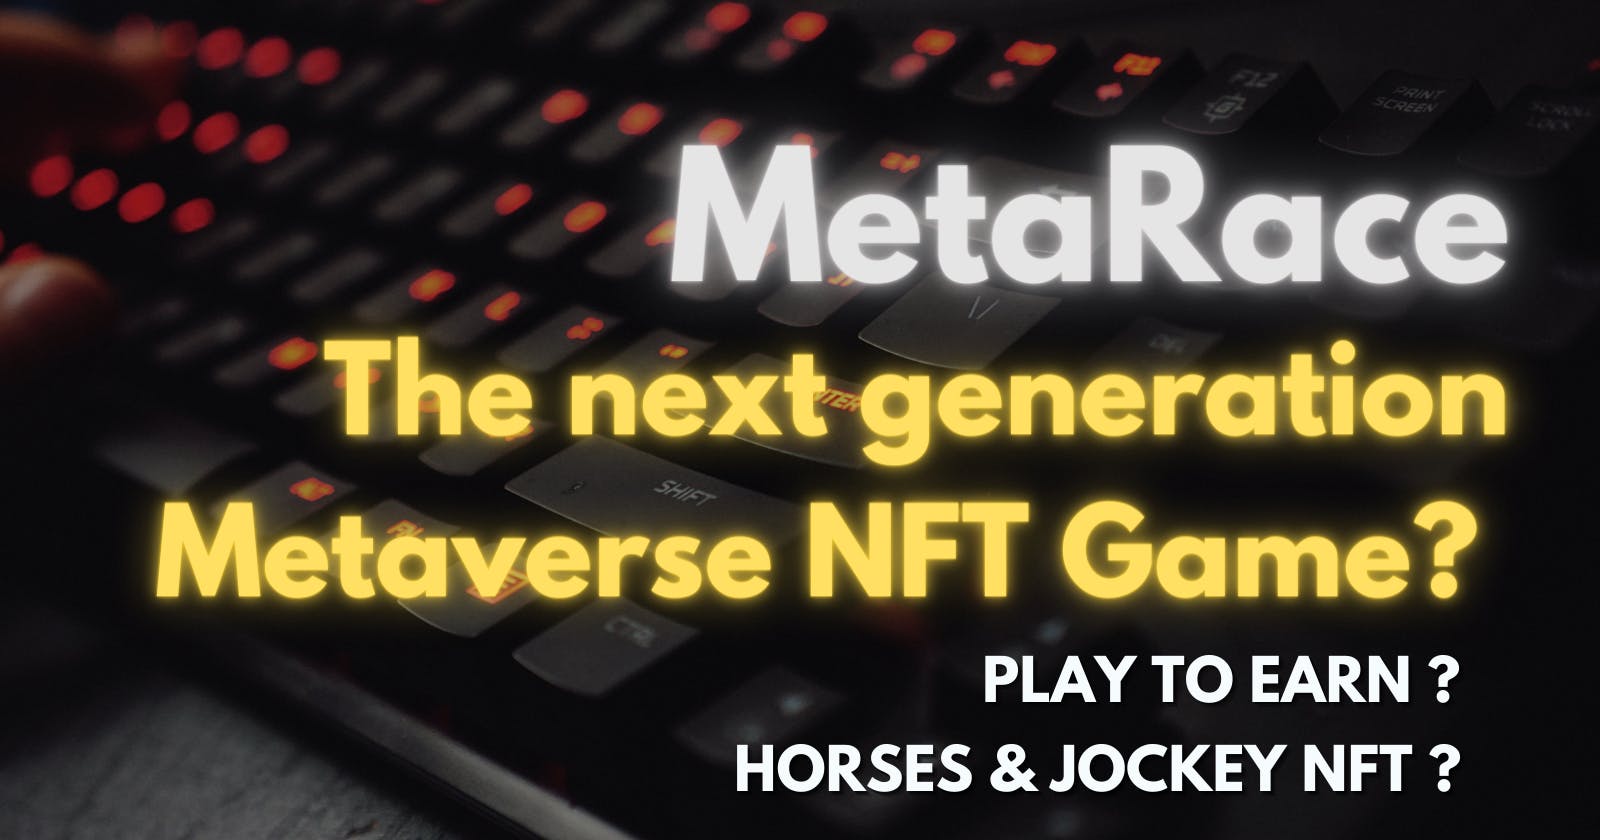 Metaverse  Games Talk "MetaRace" The next generation Metaverse NFT Game?